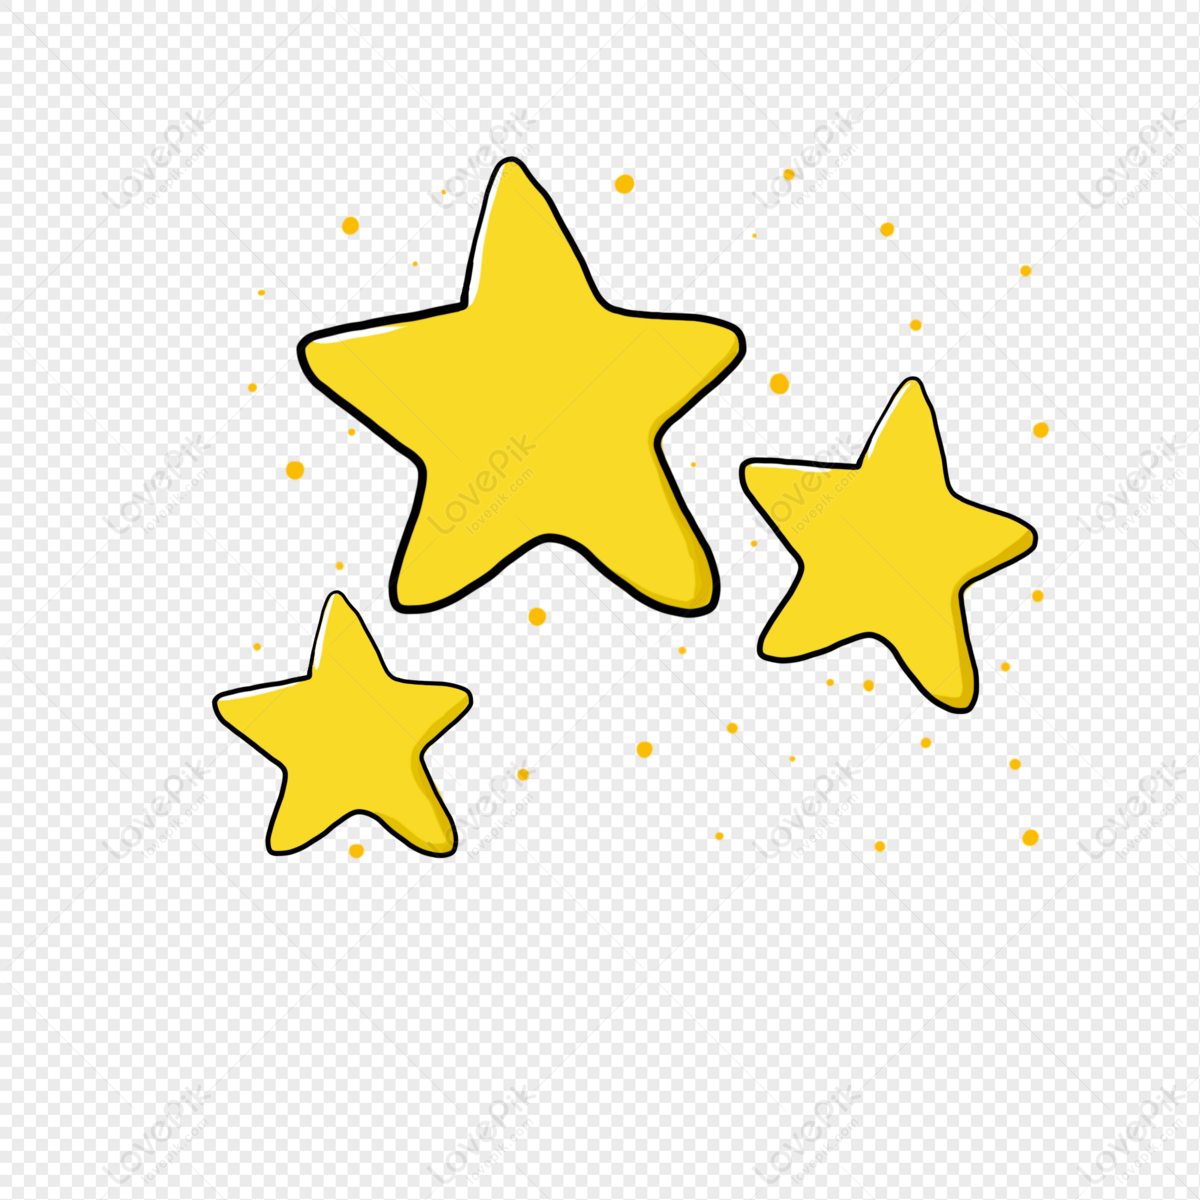 Ngôi Sao Màu Vàng - Miễn Phí vector hình ảnh trên Pixabay - Pixabay